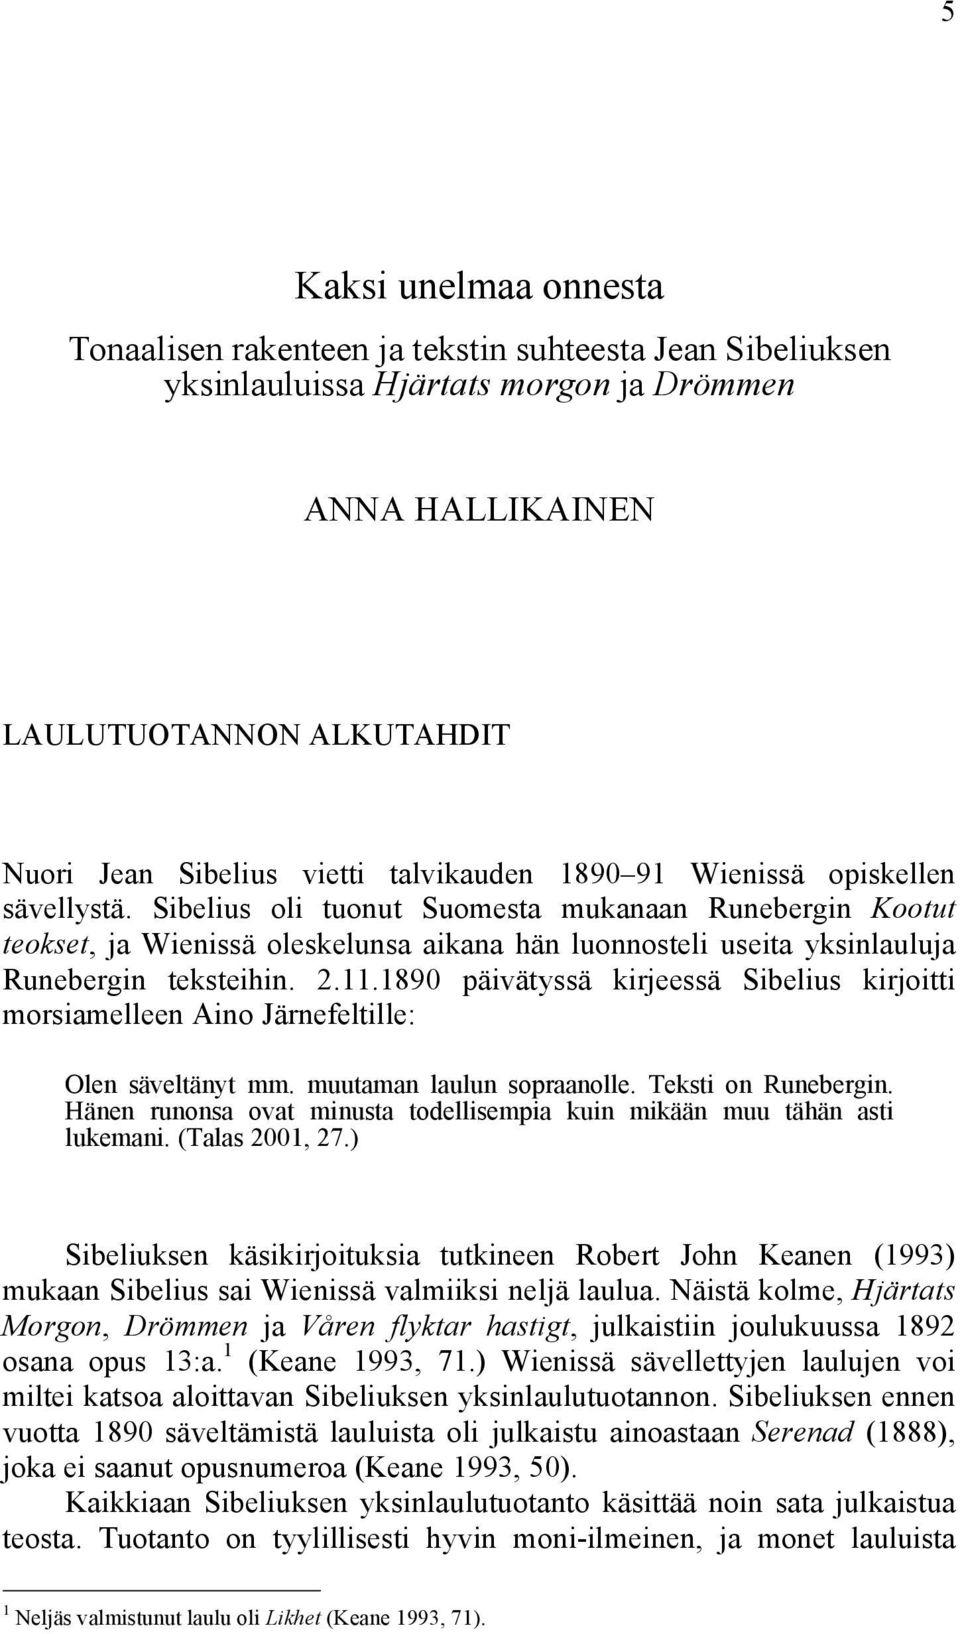 Sibelius oli tuonut Suomesta mukanaan Runebergin Kootut teokset, ja Wienissä oleskelunsa aikana hän luonnosteli useita yksinlauluja Runebergin teksteihin. 2.11.